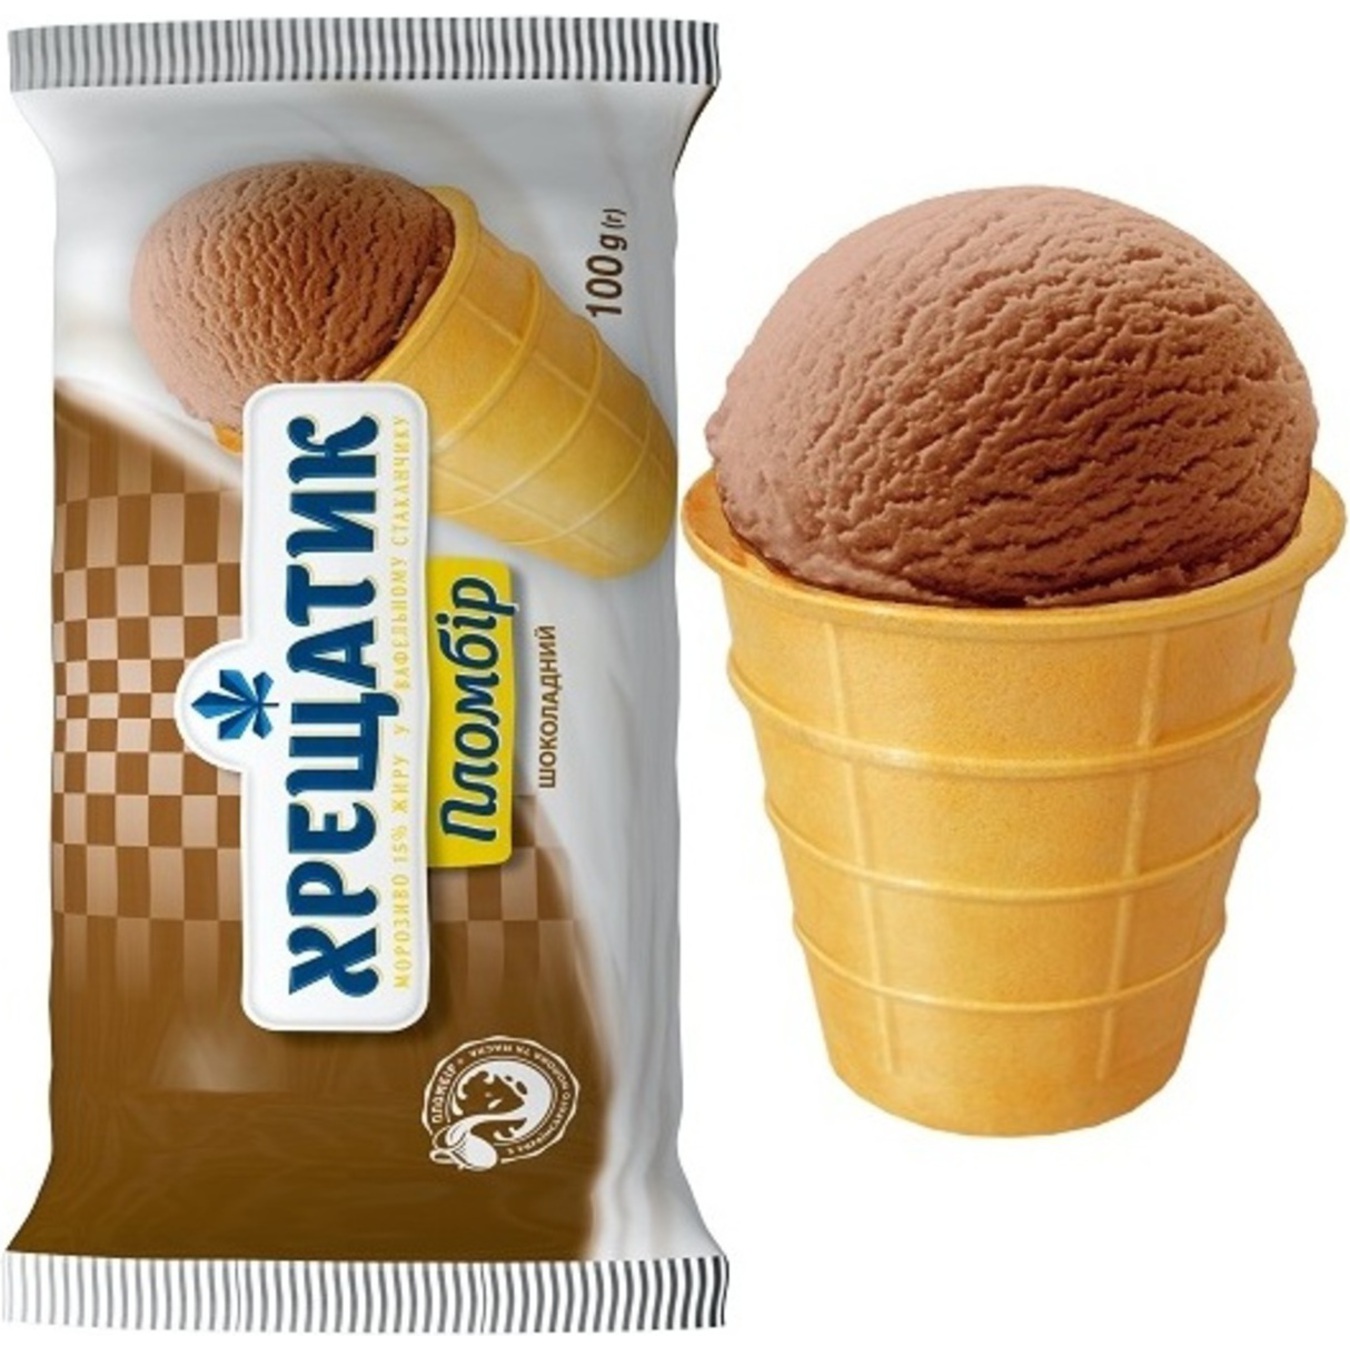 Hladyk Khreshchatyk chocolate ice-cream 100g